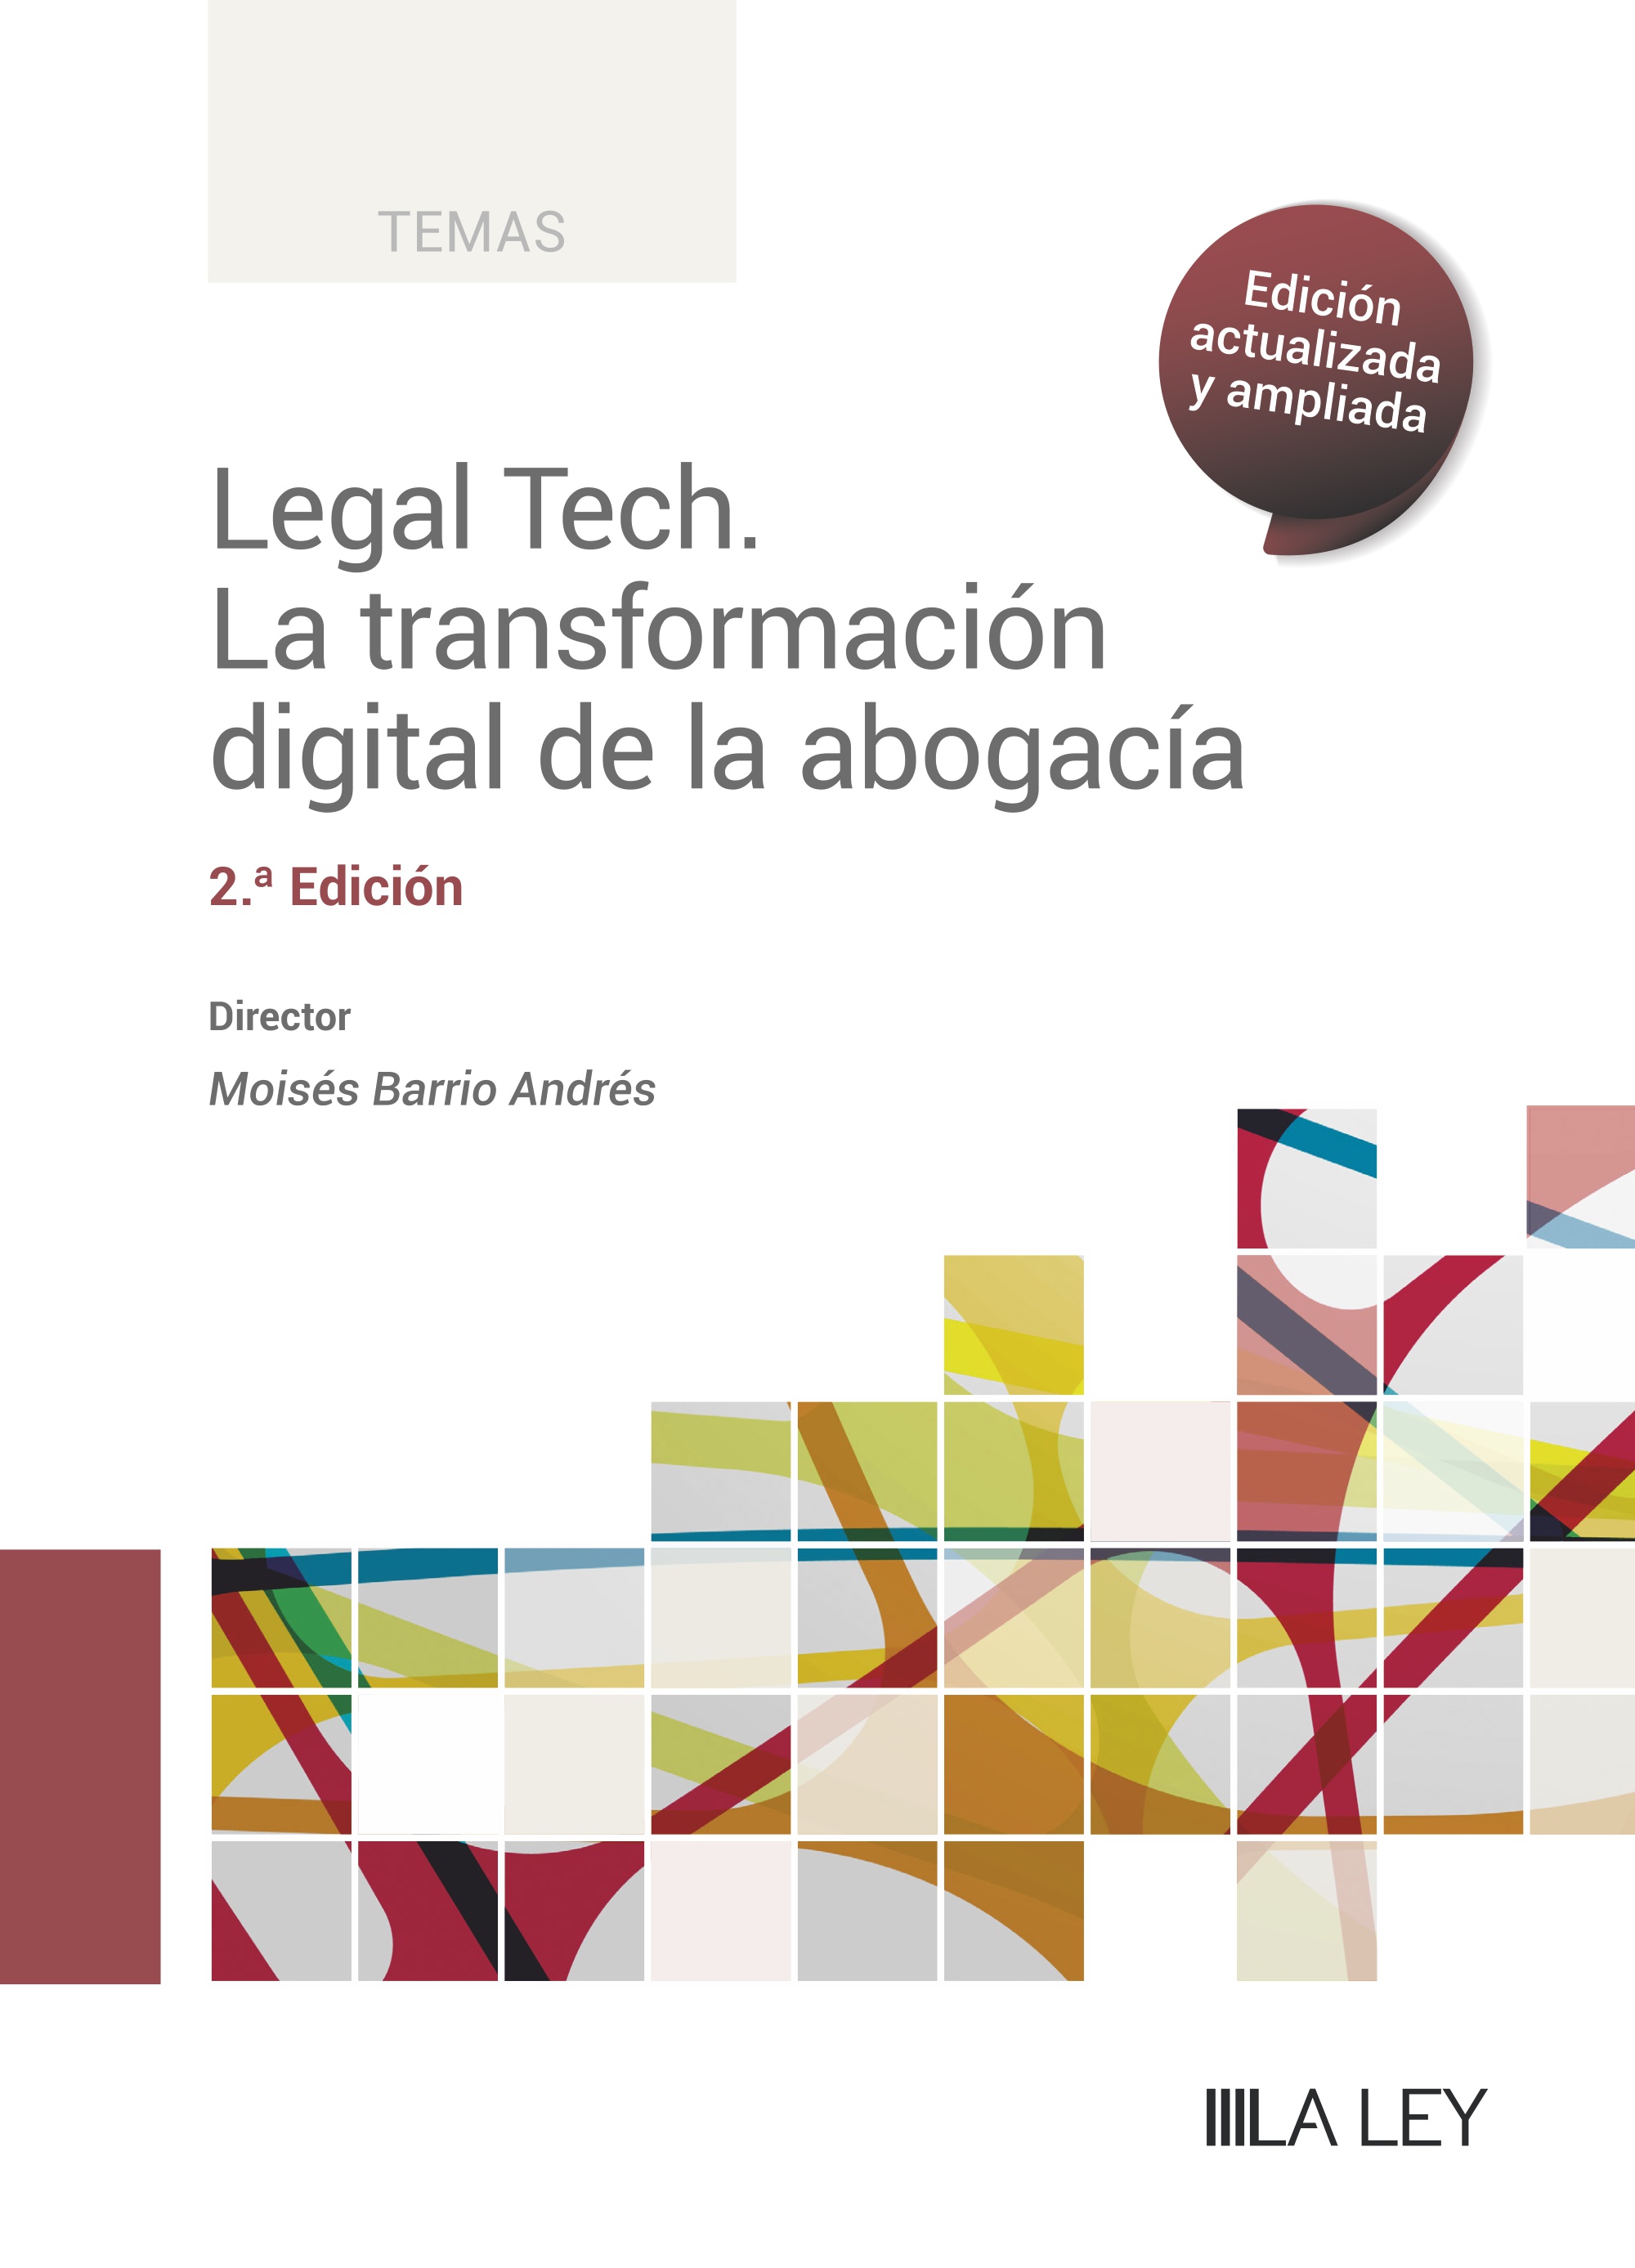 Nueva edición del libro “Legal Tech. La transformación digital de la abogacía”